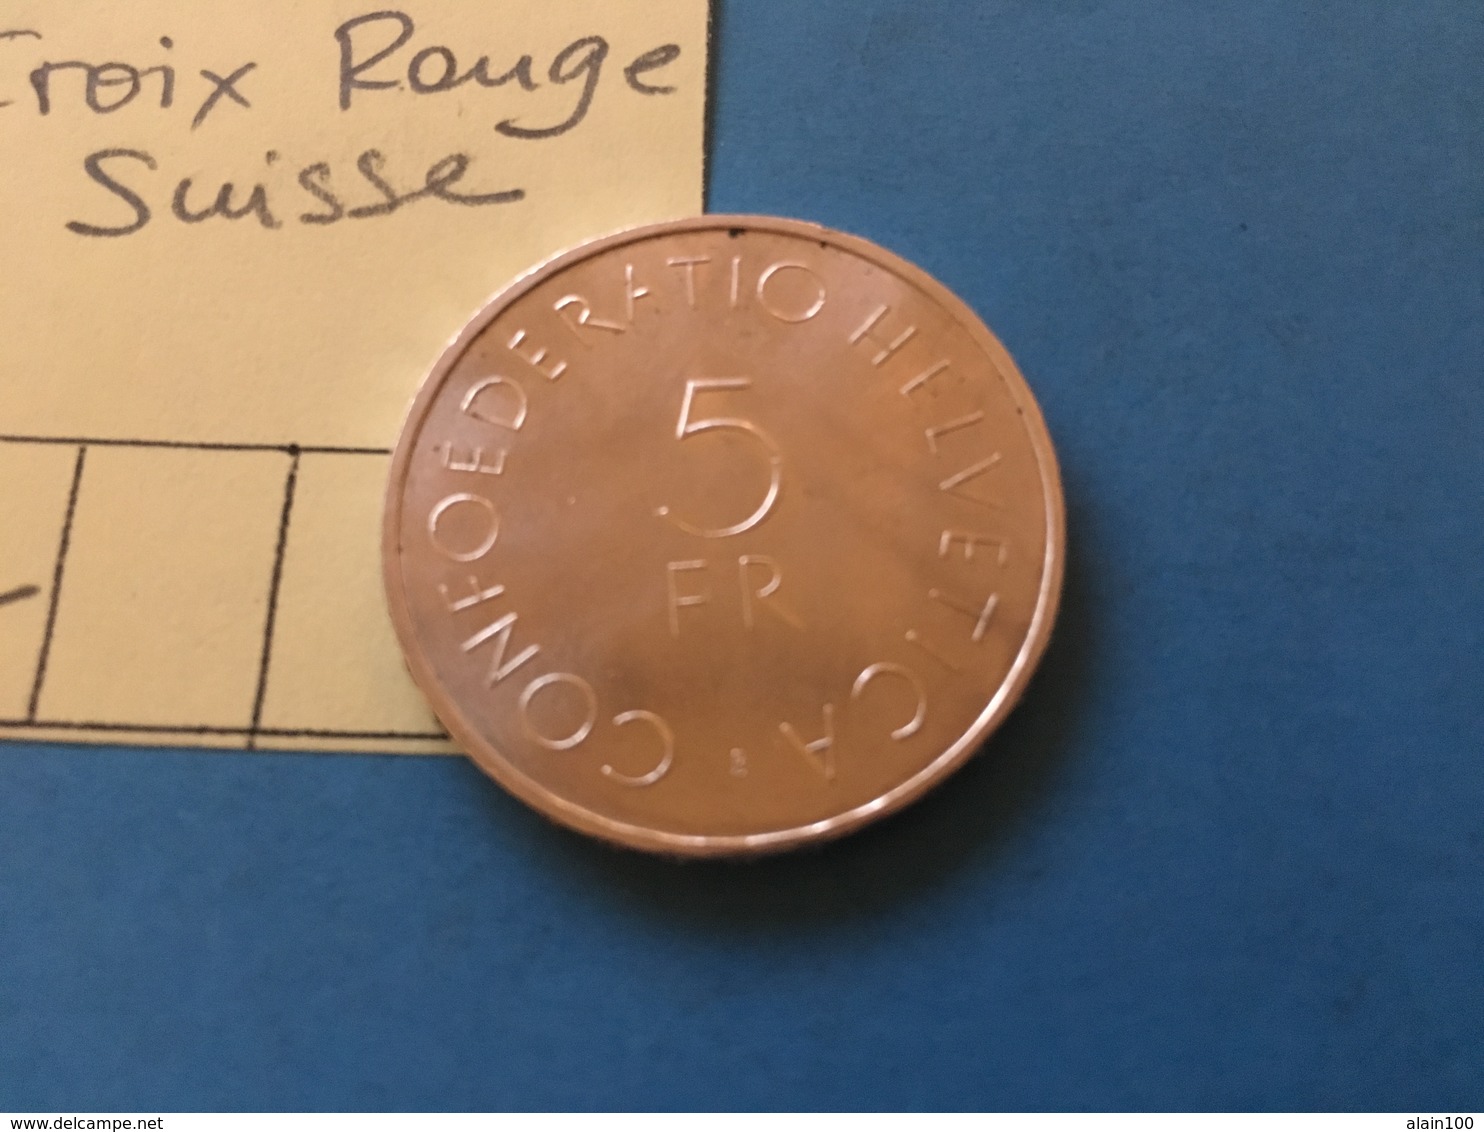 5 FRANCS SUISSE  1963 - CROIX ROUGE SUISSE - MONNAIE ARGENT SUPERBE - Vrac - Monnaies